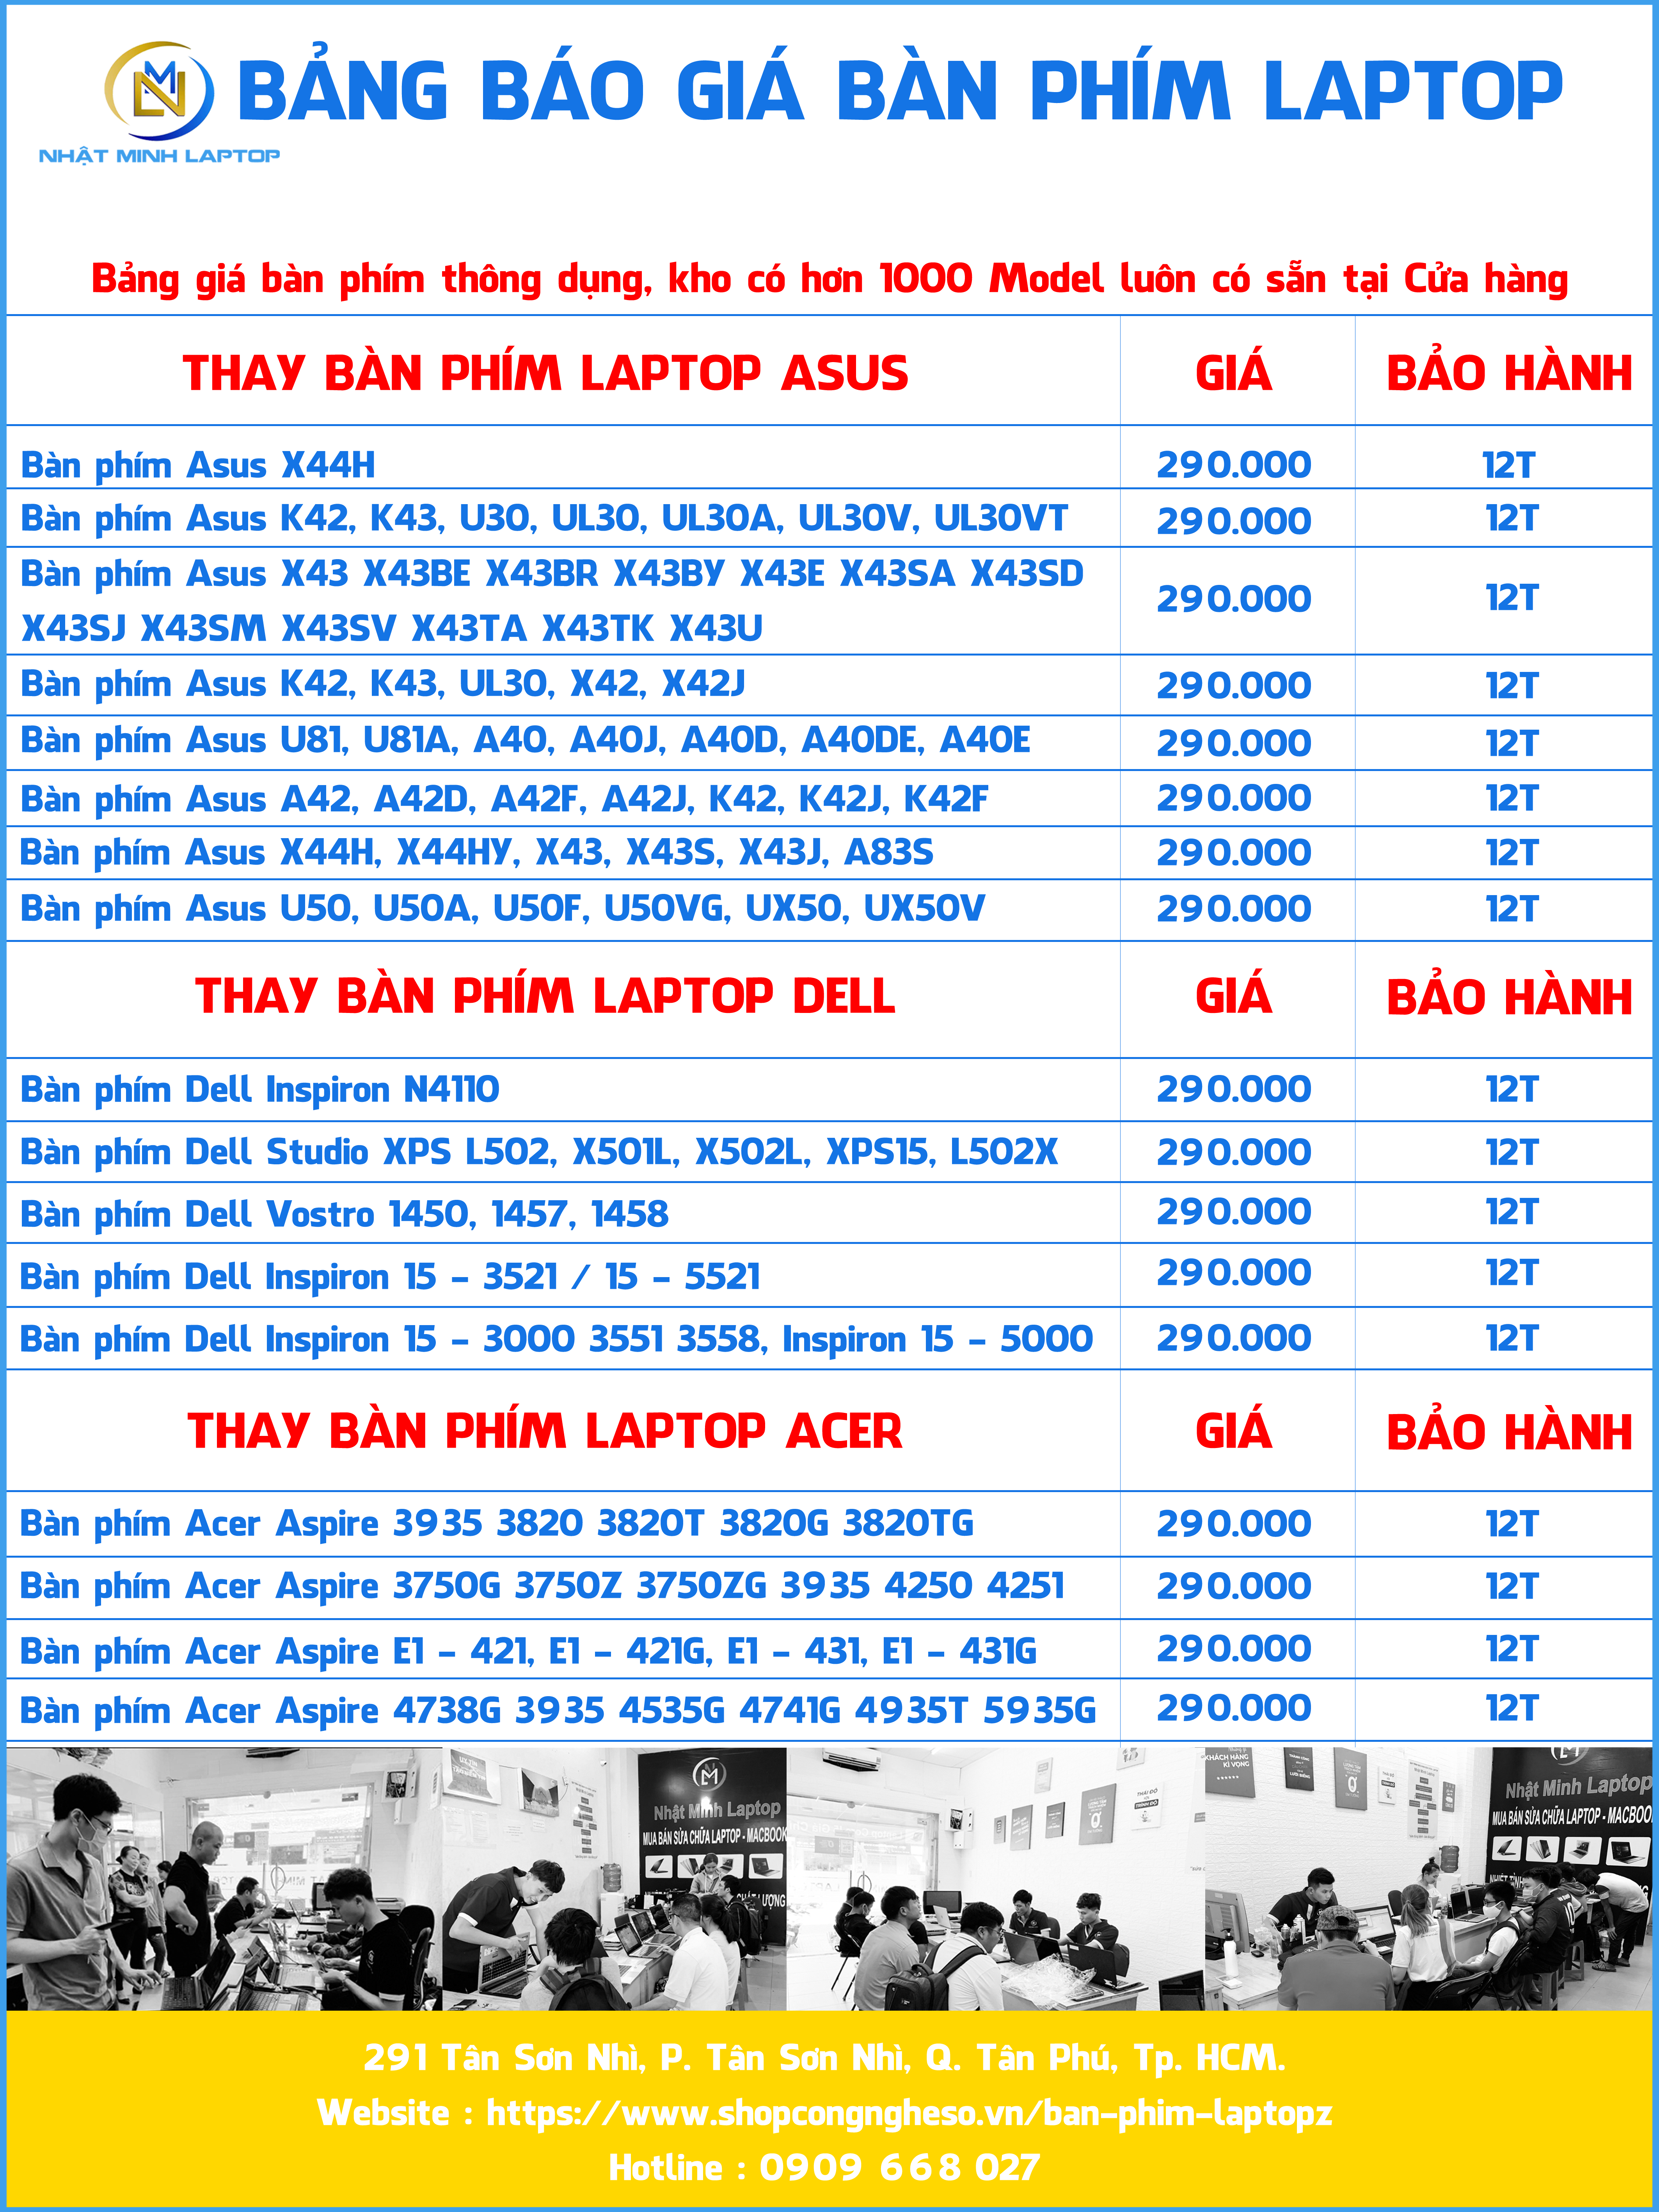 Bảng báo giá bàn phím laptop tại Trung Tâm Nhật Minh